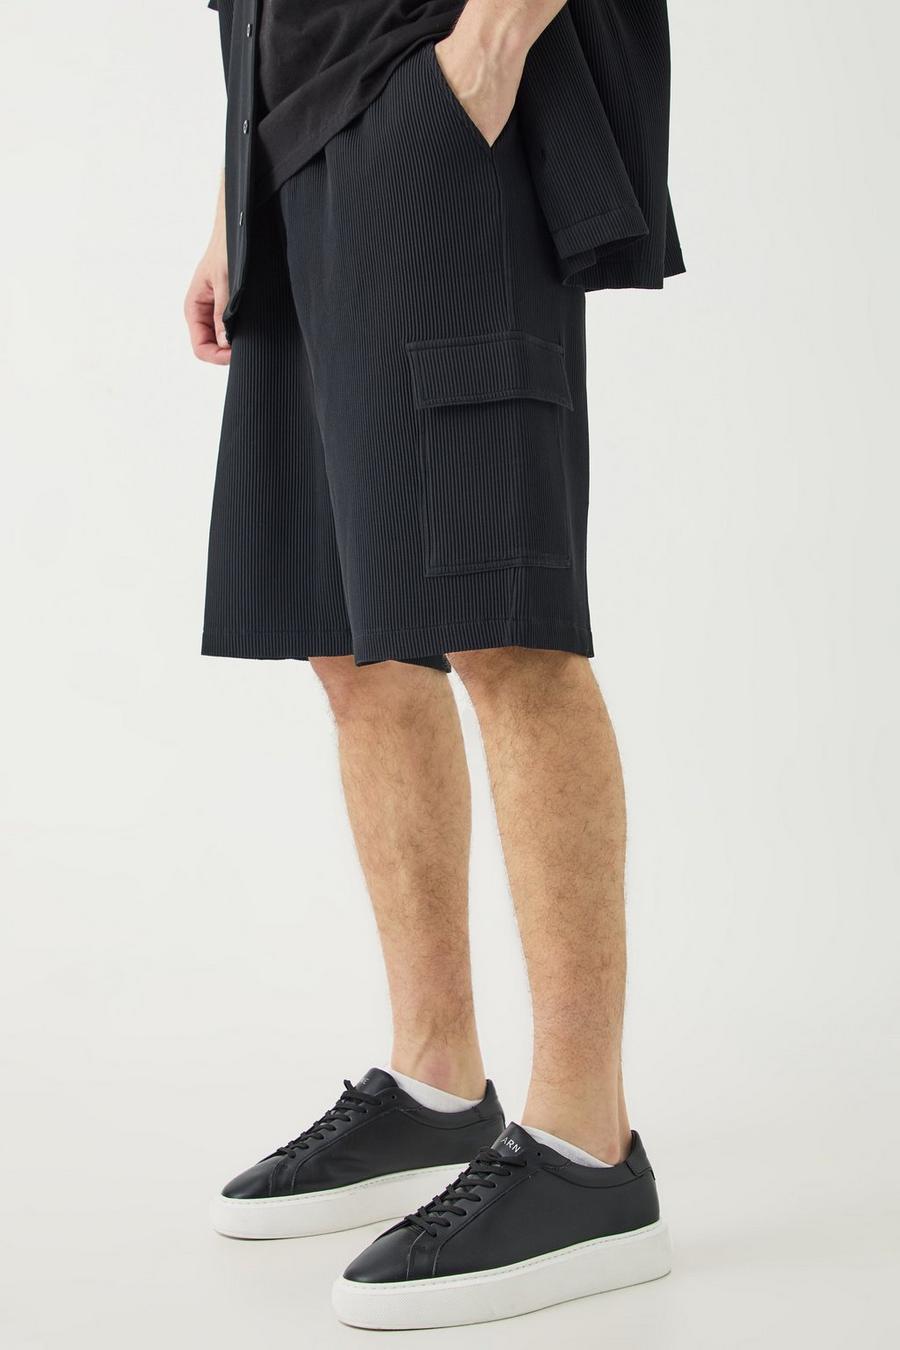 Pantalón corto Tall cargo plisado con cintura elástica, Black image number 1